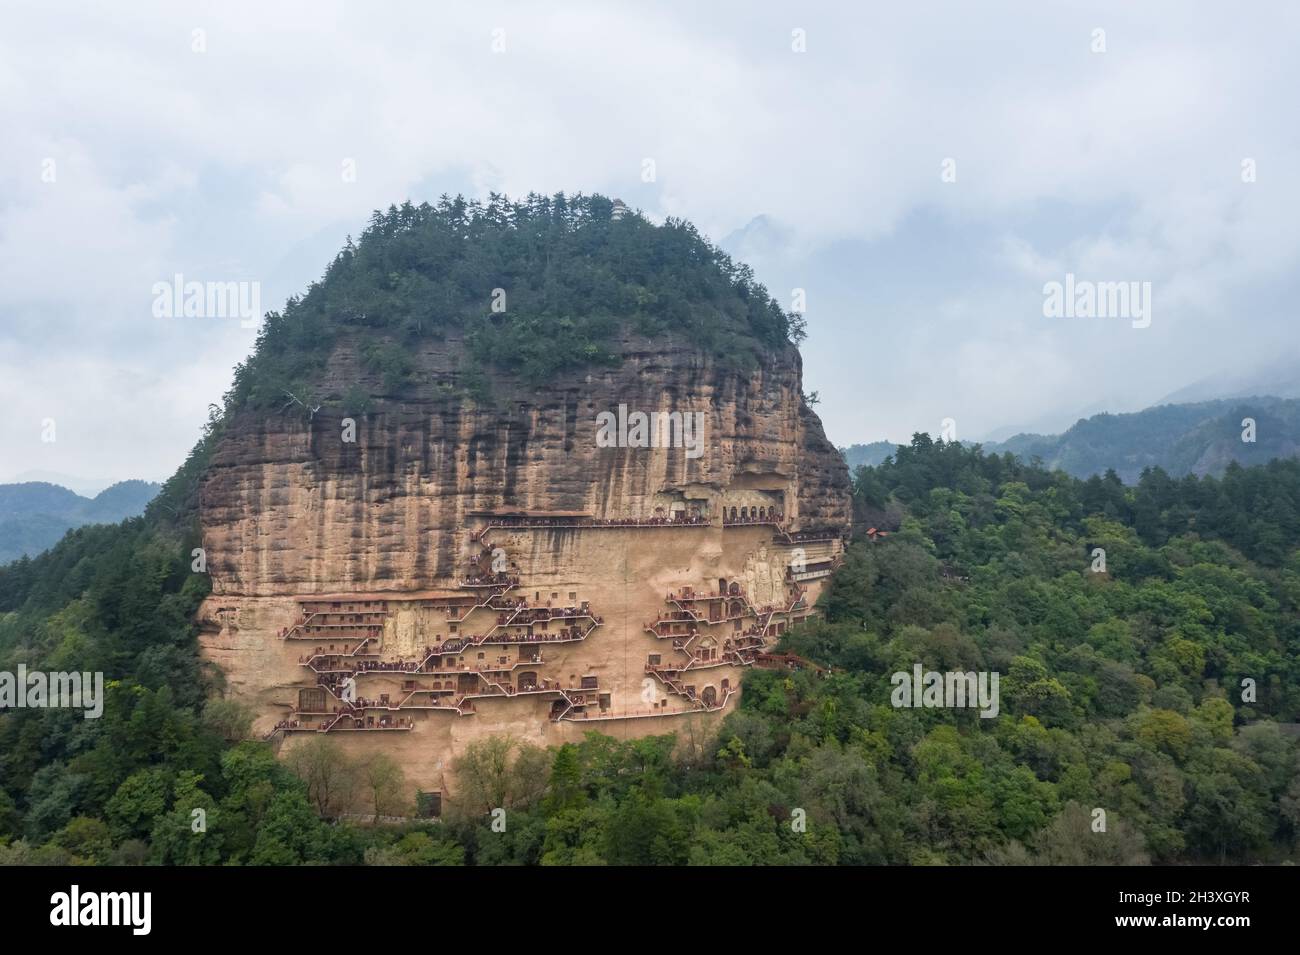 Grottes de montagne de Gansu maiji dans le ciel nuageux Banque D'Images